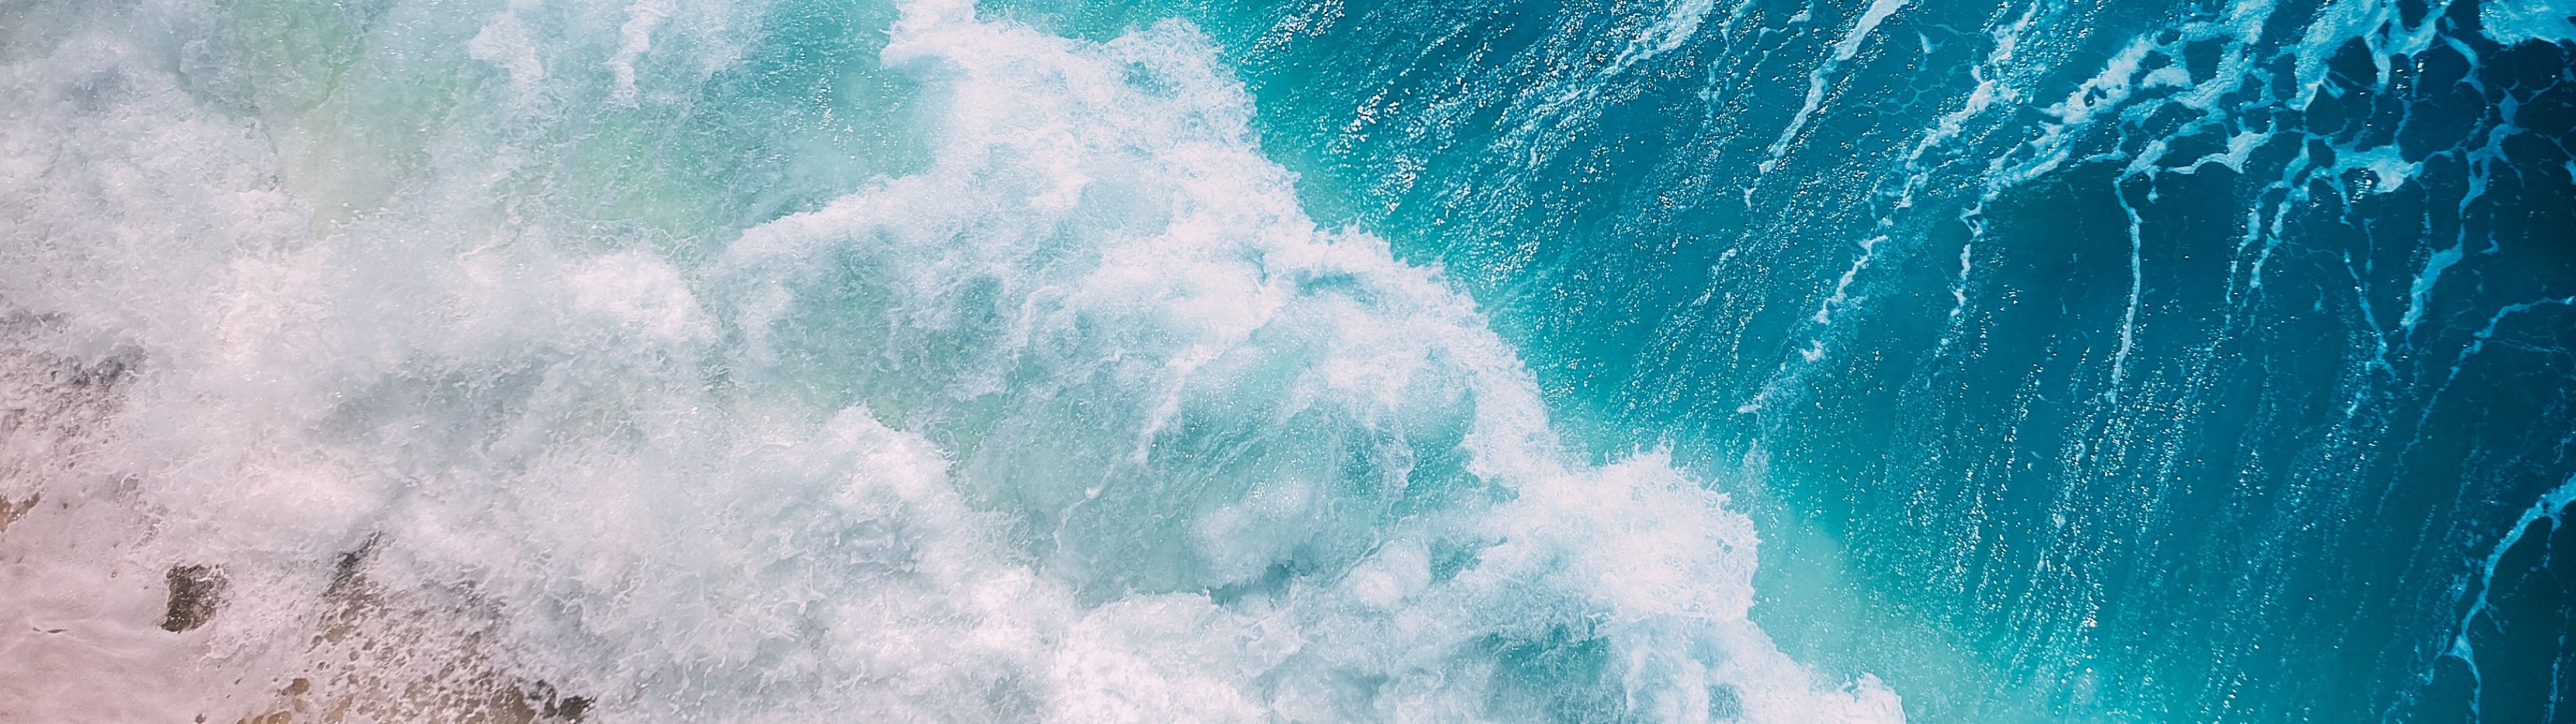 Ocean Waves Wallpaper 4K, Aerial view